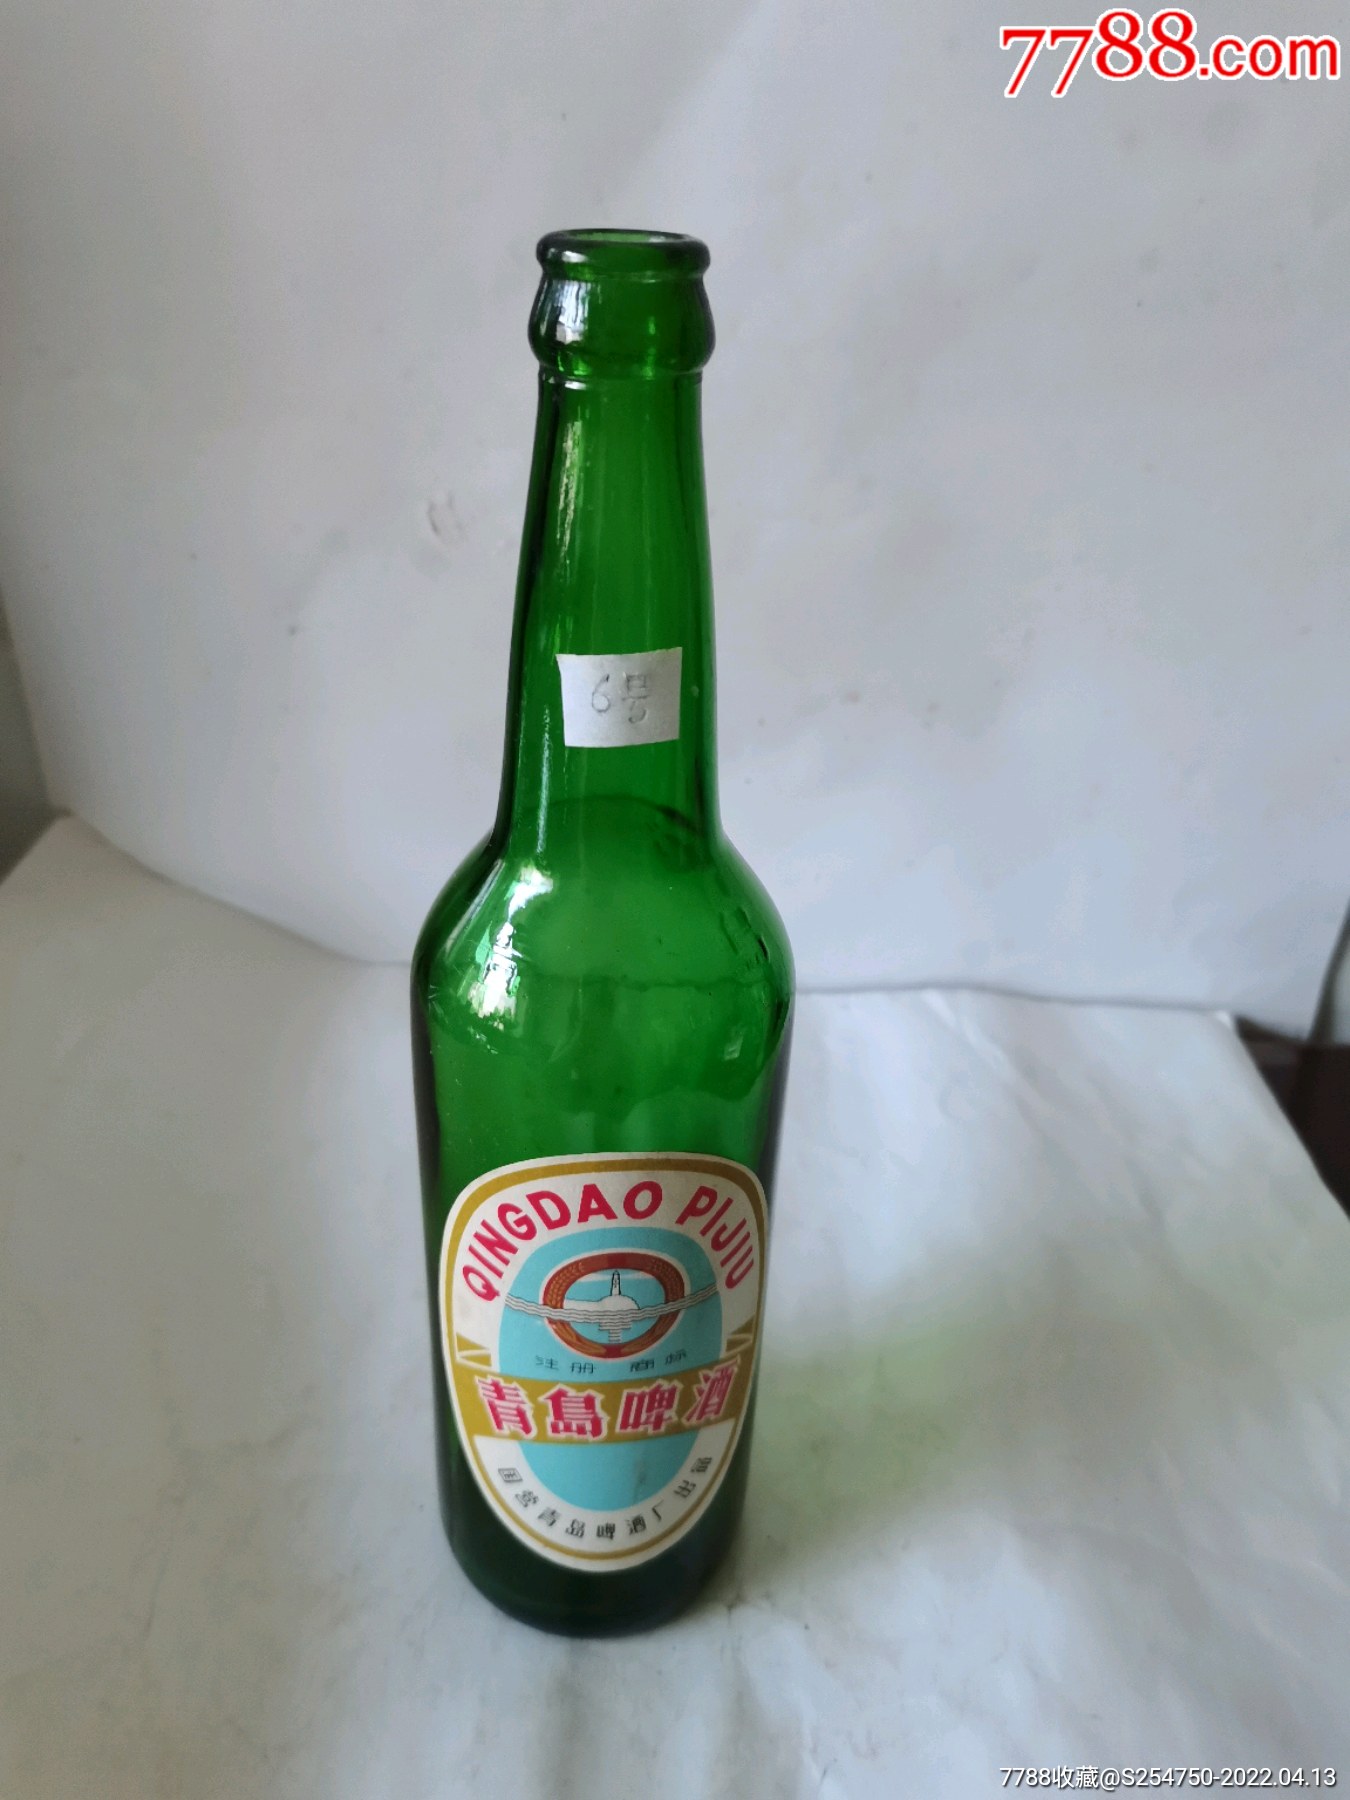 国营青岛啤酒厂出品青岛啤酒瓶